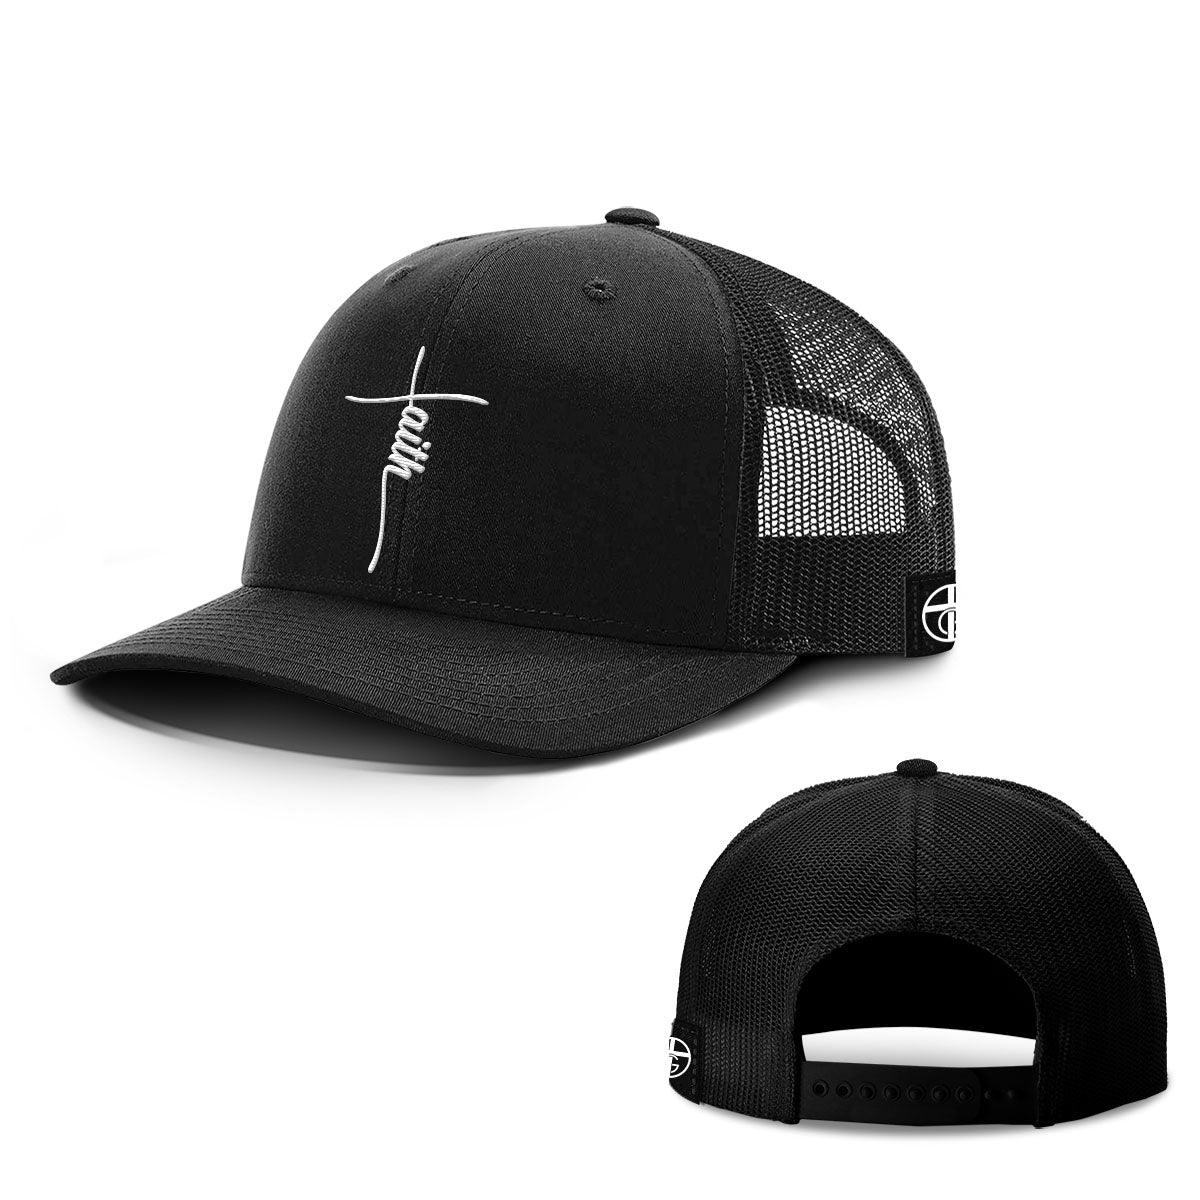 Faith Cross Center Hats